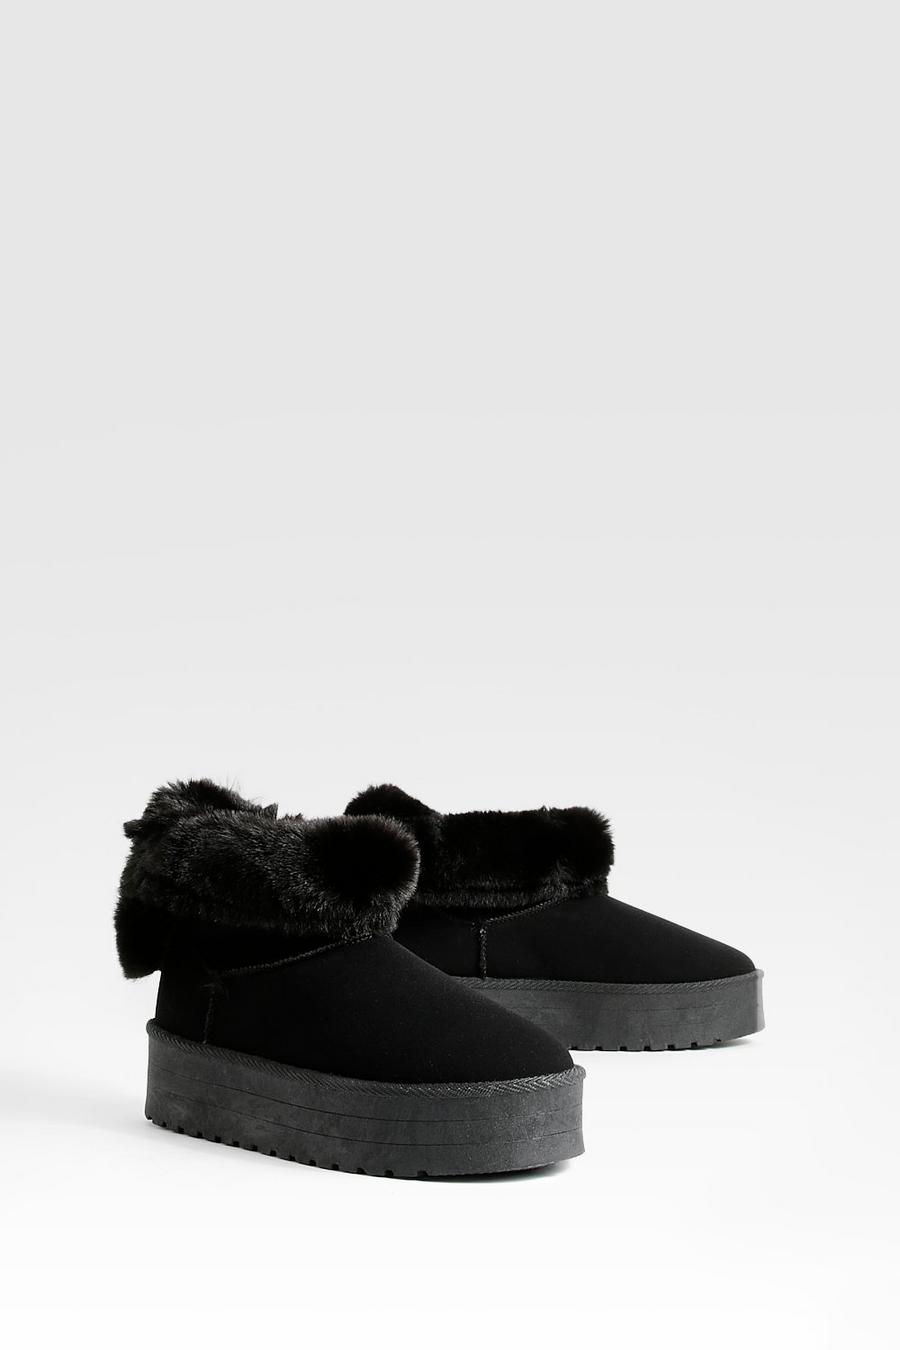 Black Fur Trim Platform Mini Cosy Boots     